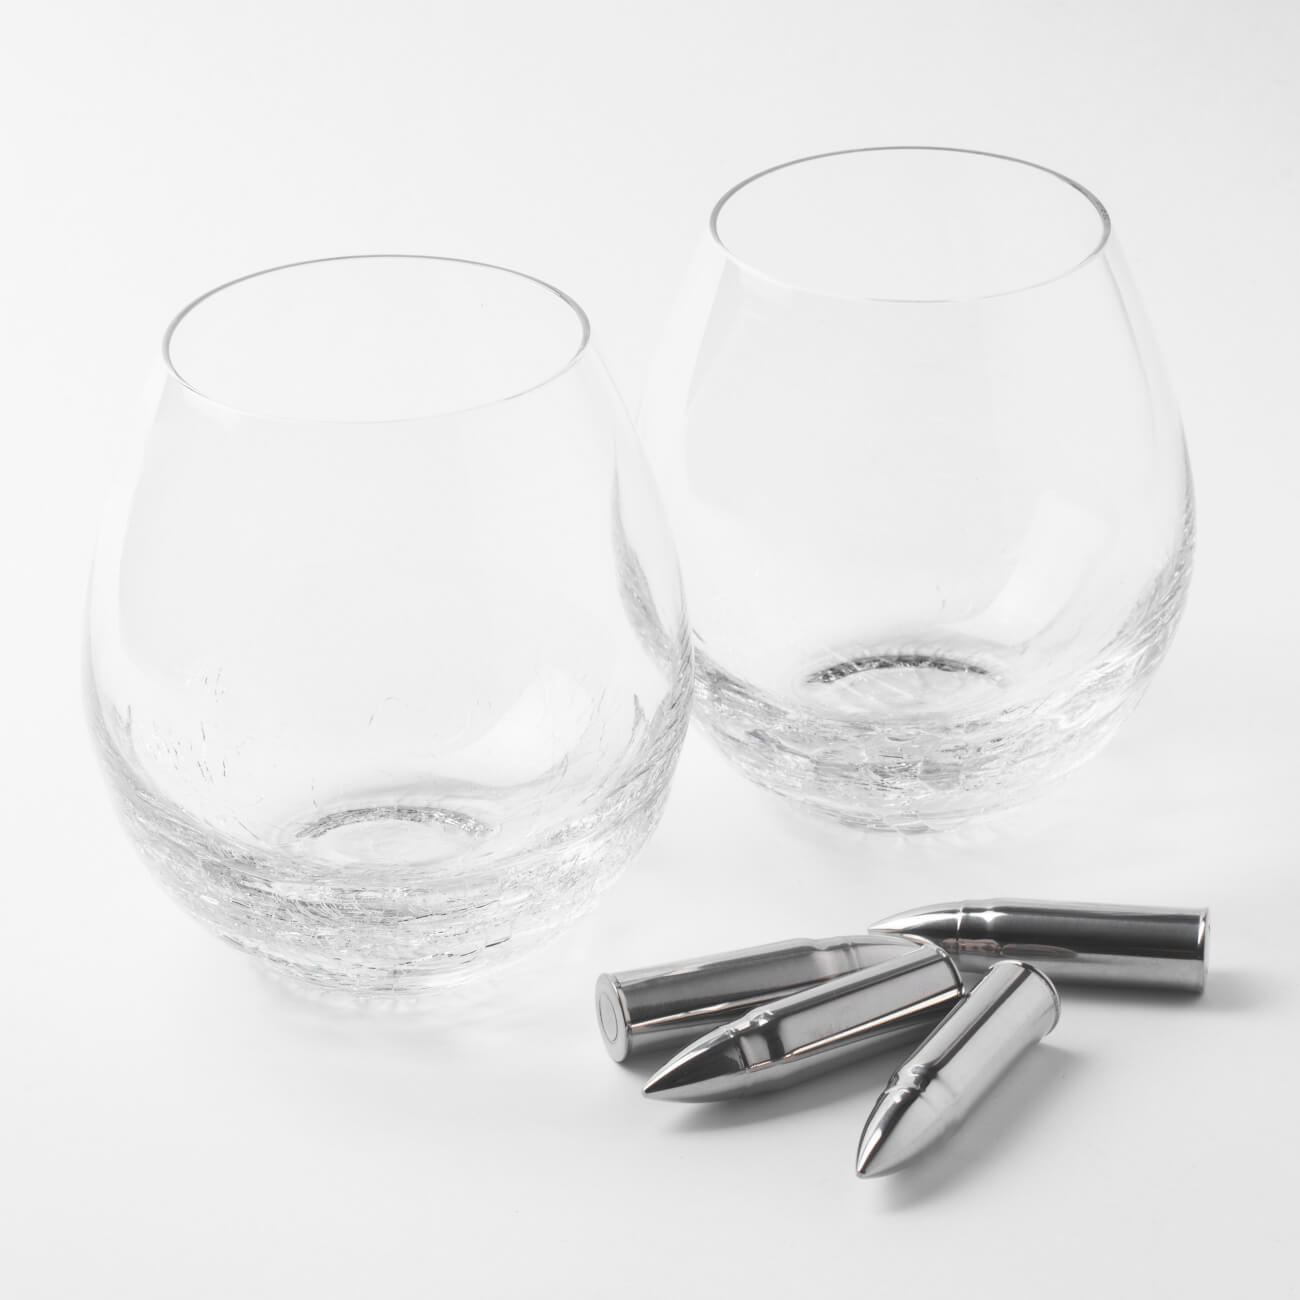 Набор для виски, 2 перс, 6 пр, стаканы/кубики, стекло/сталь, Кракелюр, Пули, Bullet набор для виски 1 перс 5 пр в коробке стакан кубики подставка стекло мрамор сланец bar